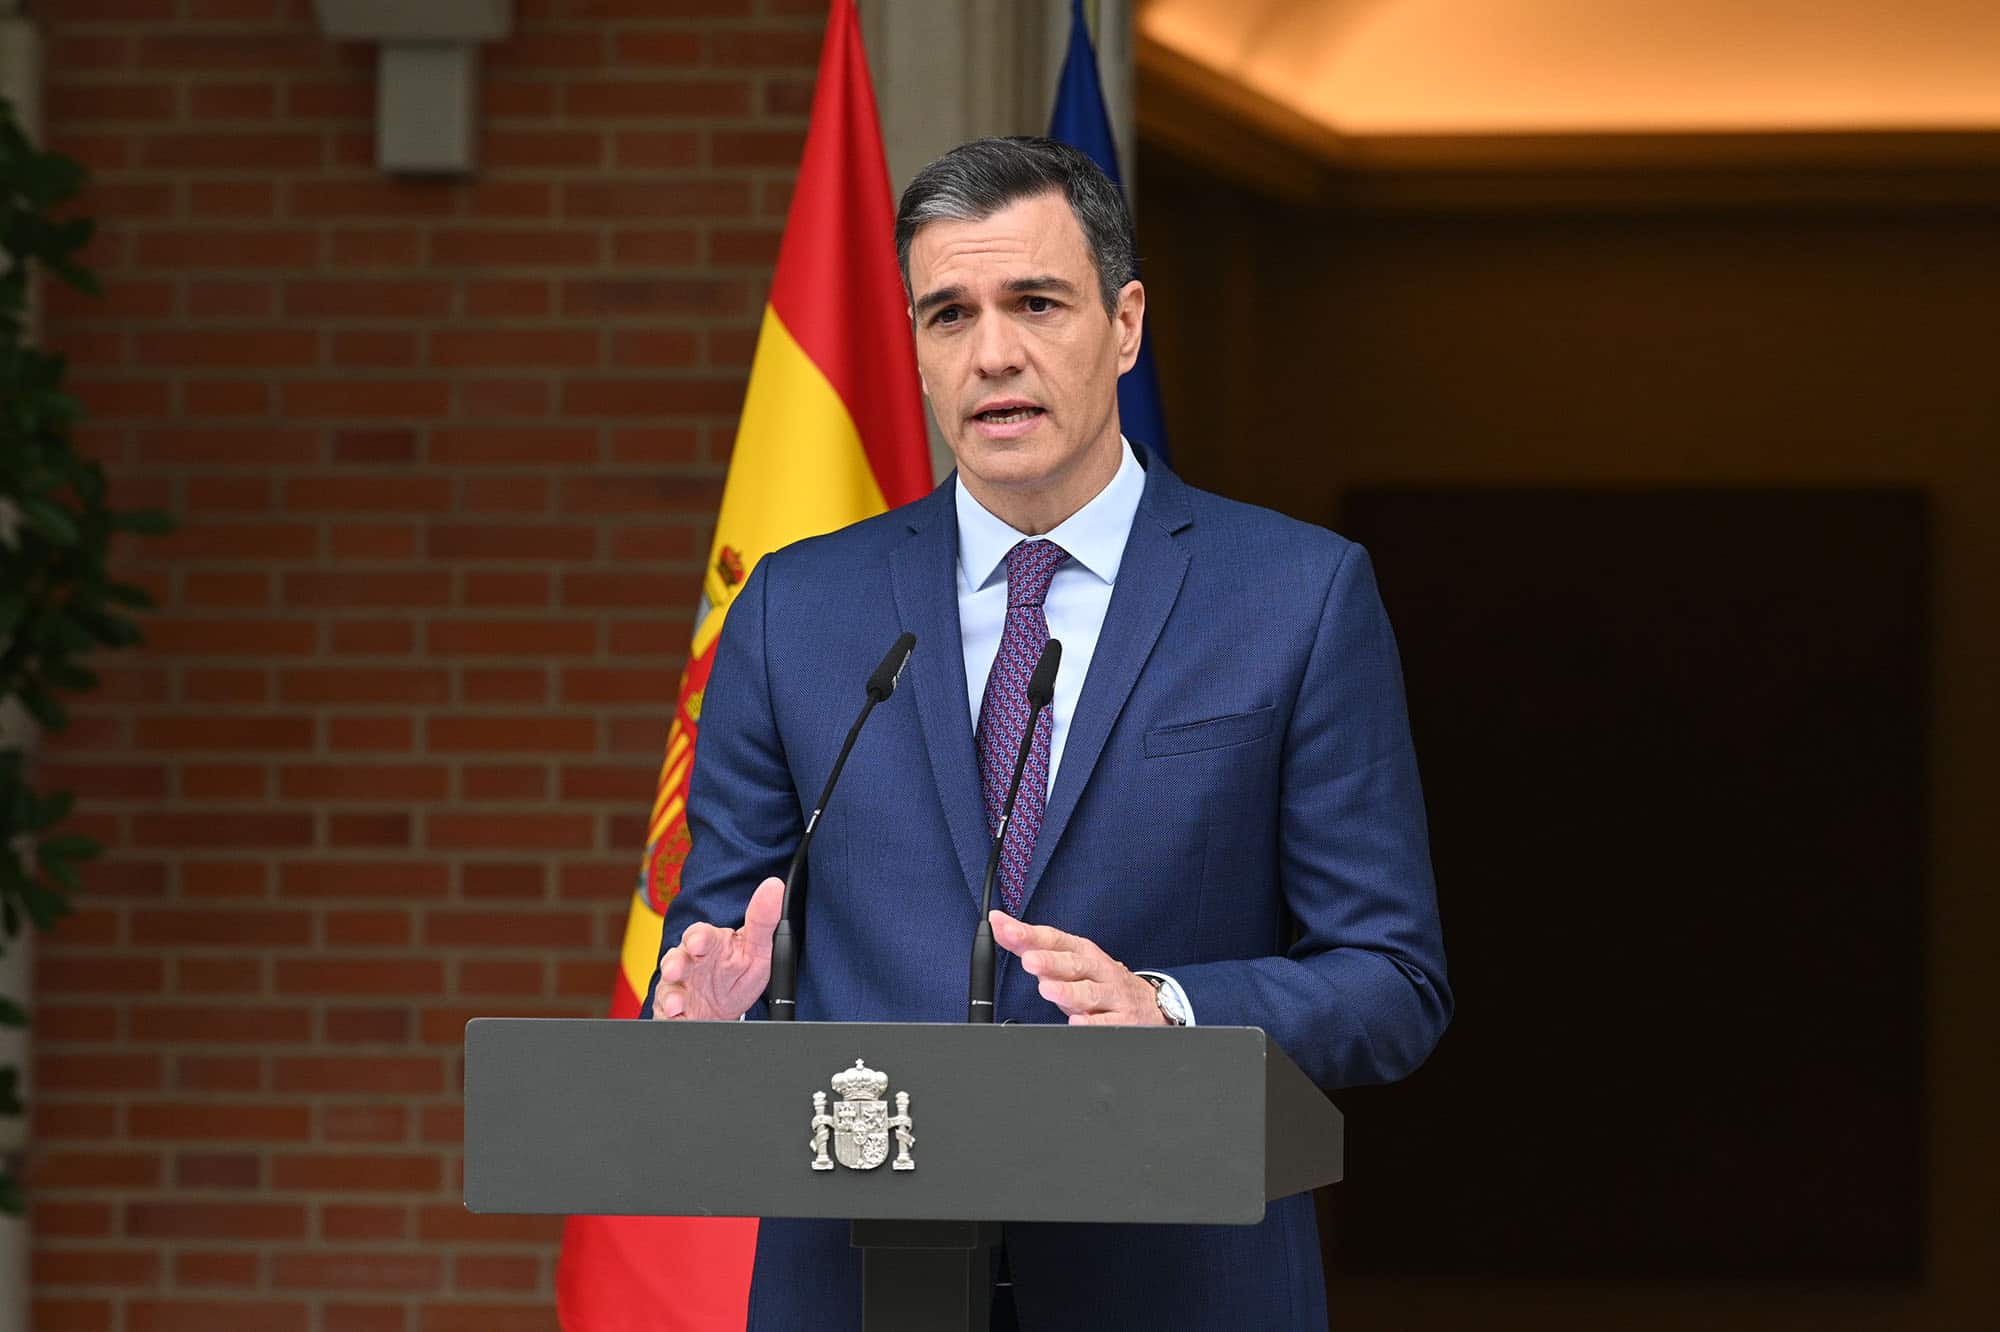 Pedro Sanchez, le Premier ministre espagnol dissout le Parlement et appelle à des élections nationales